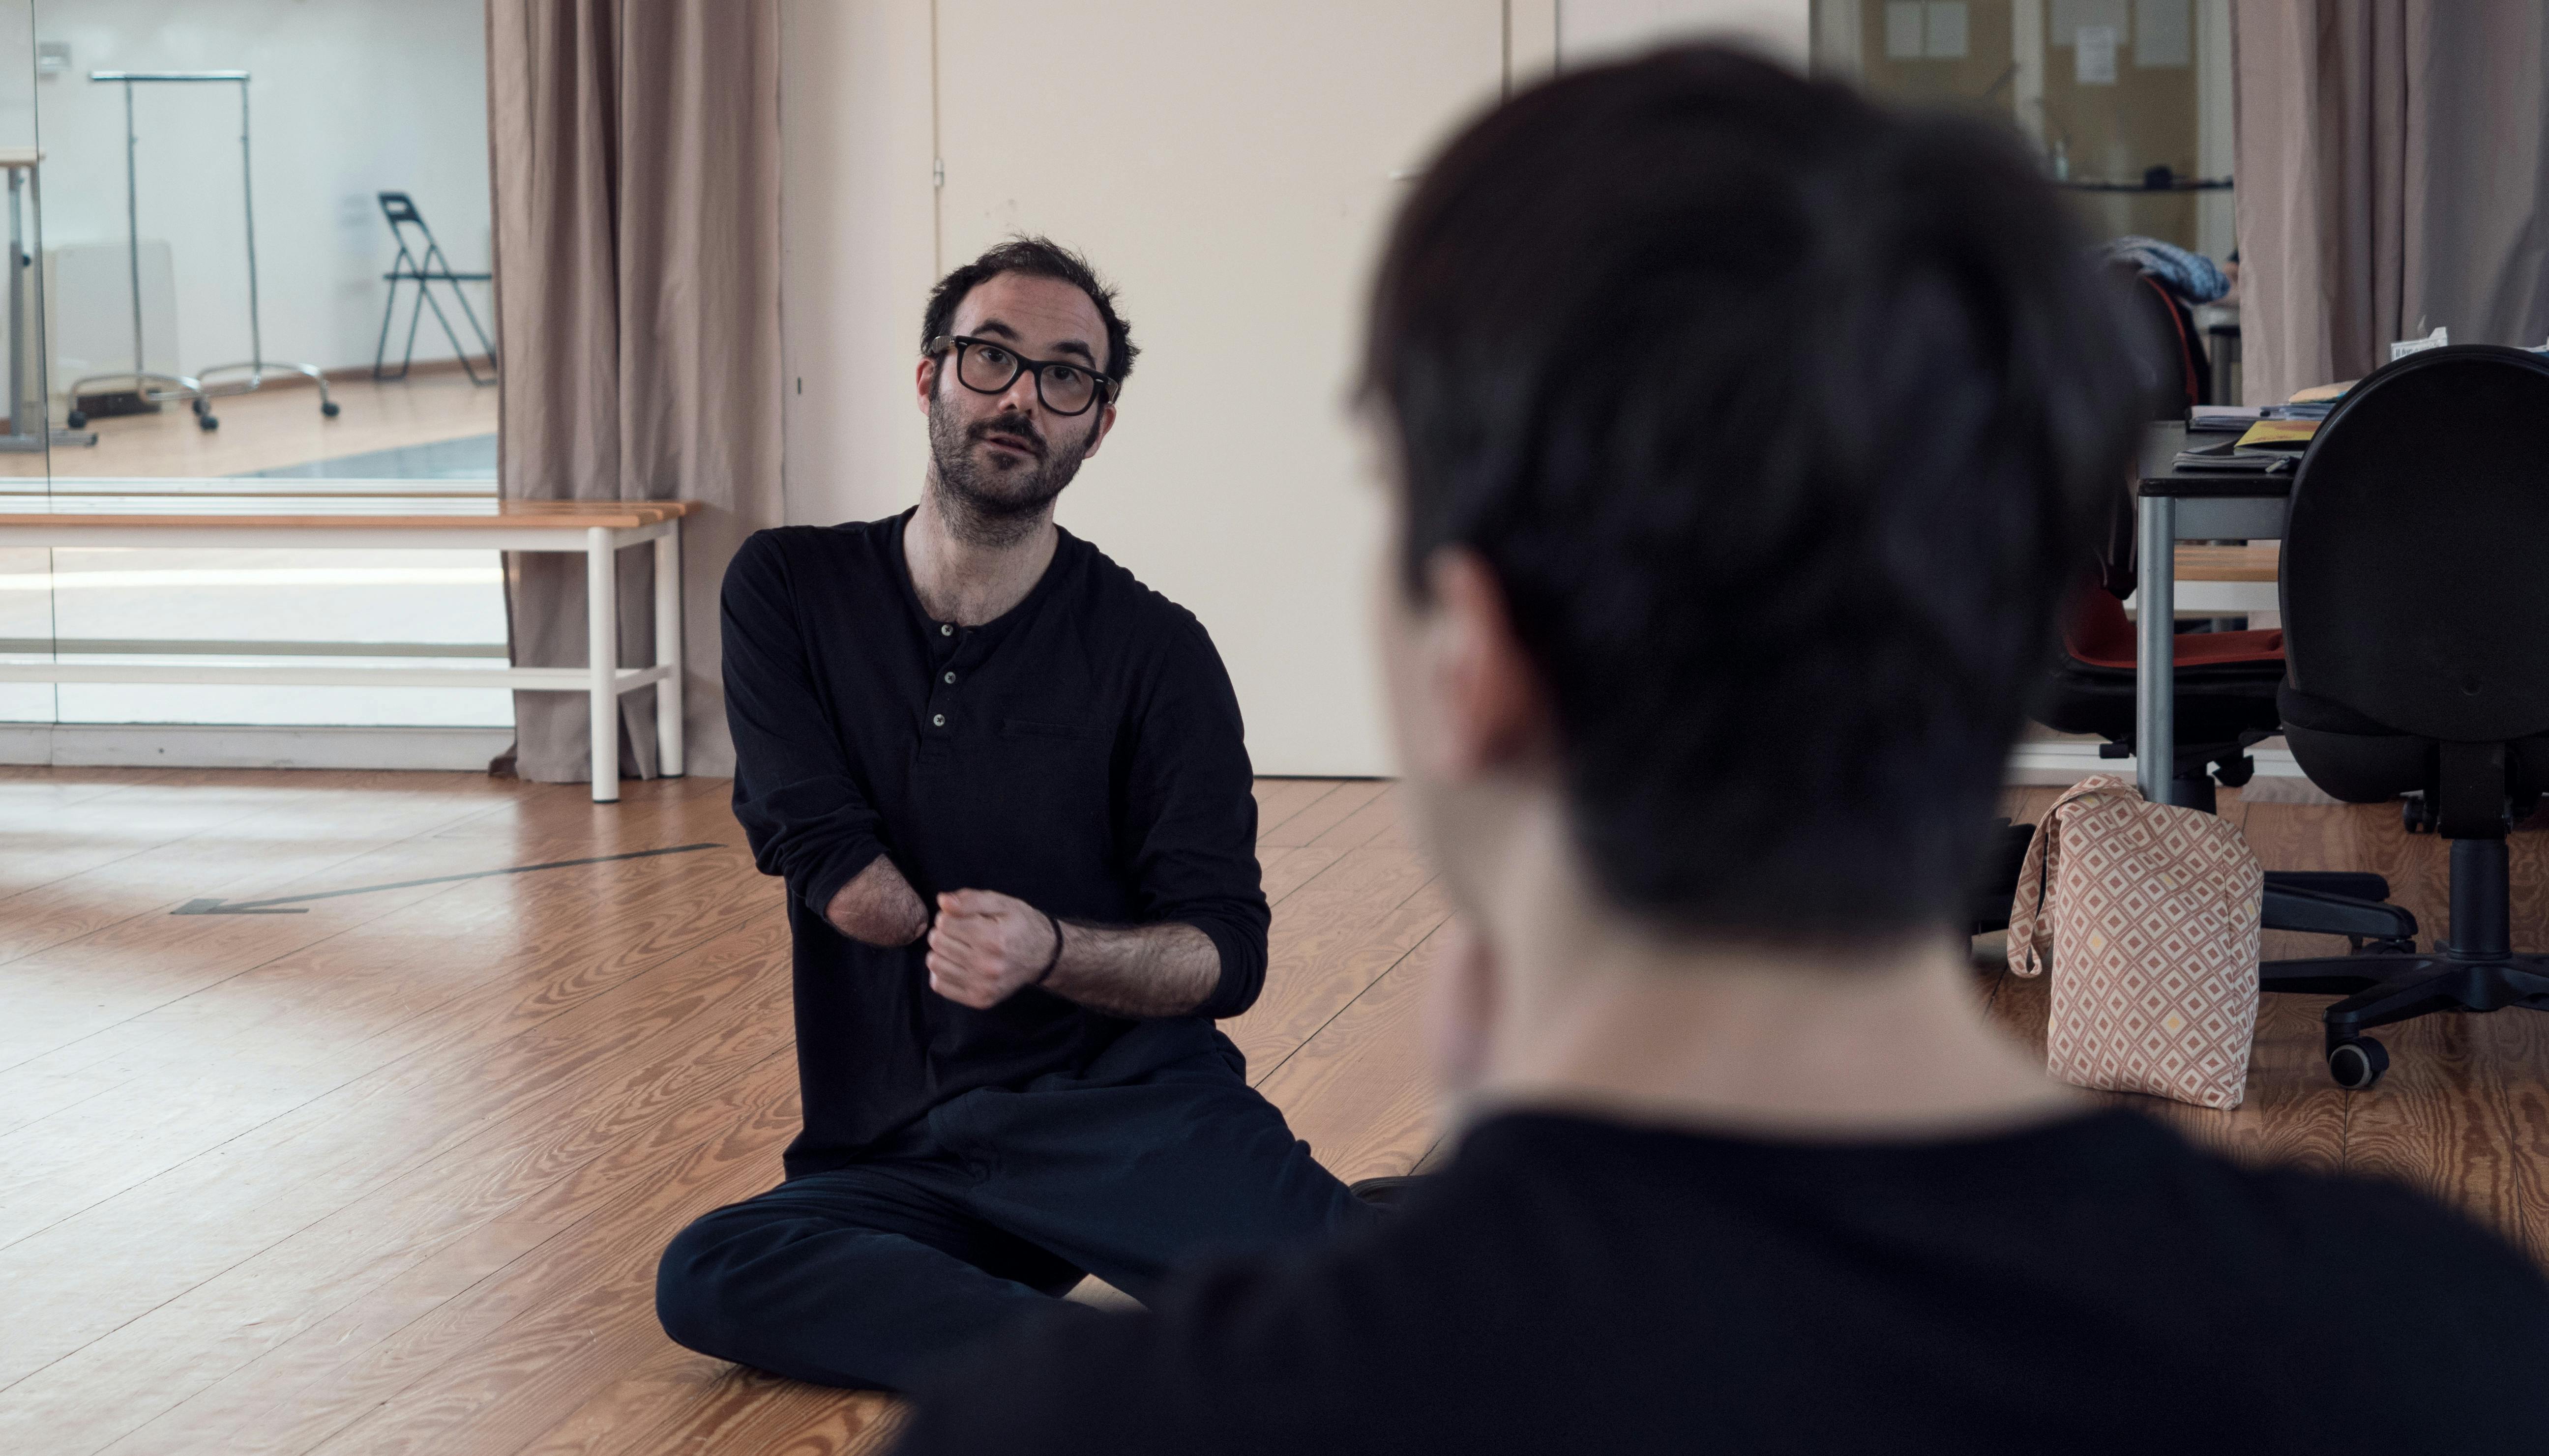 Aristide Rontini, seduto a terra nello Studio, parla al danzatore Cristian Cucco, seduto di fronte a lui.